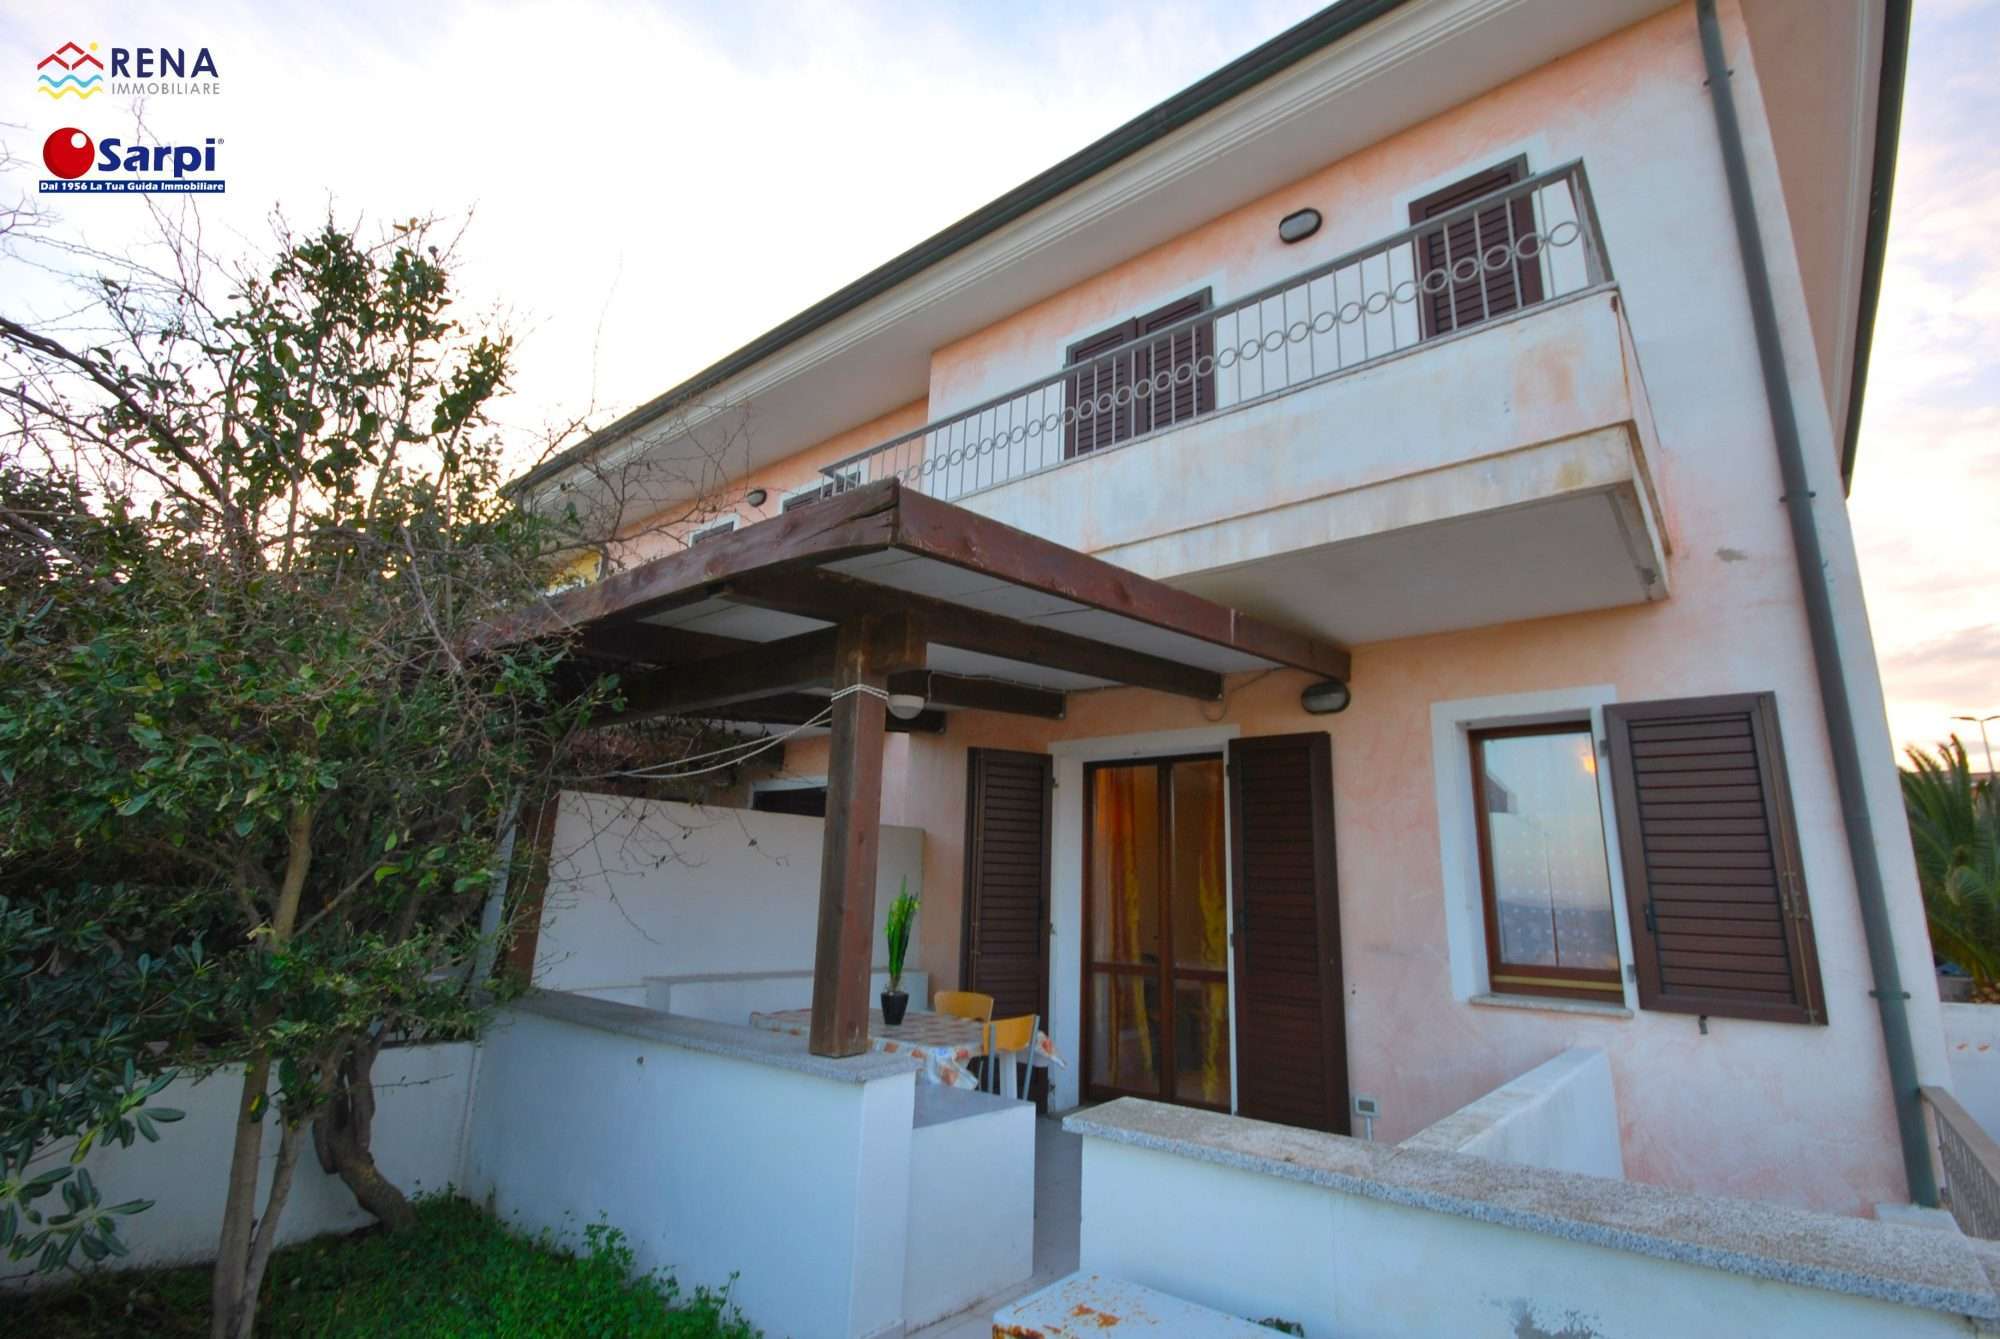 Interessante bilocale con veranda coperta – Santa Teresa Gallura